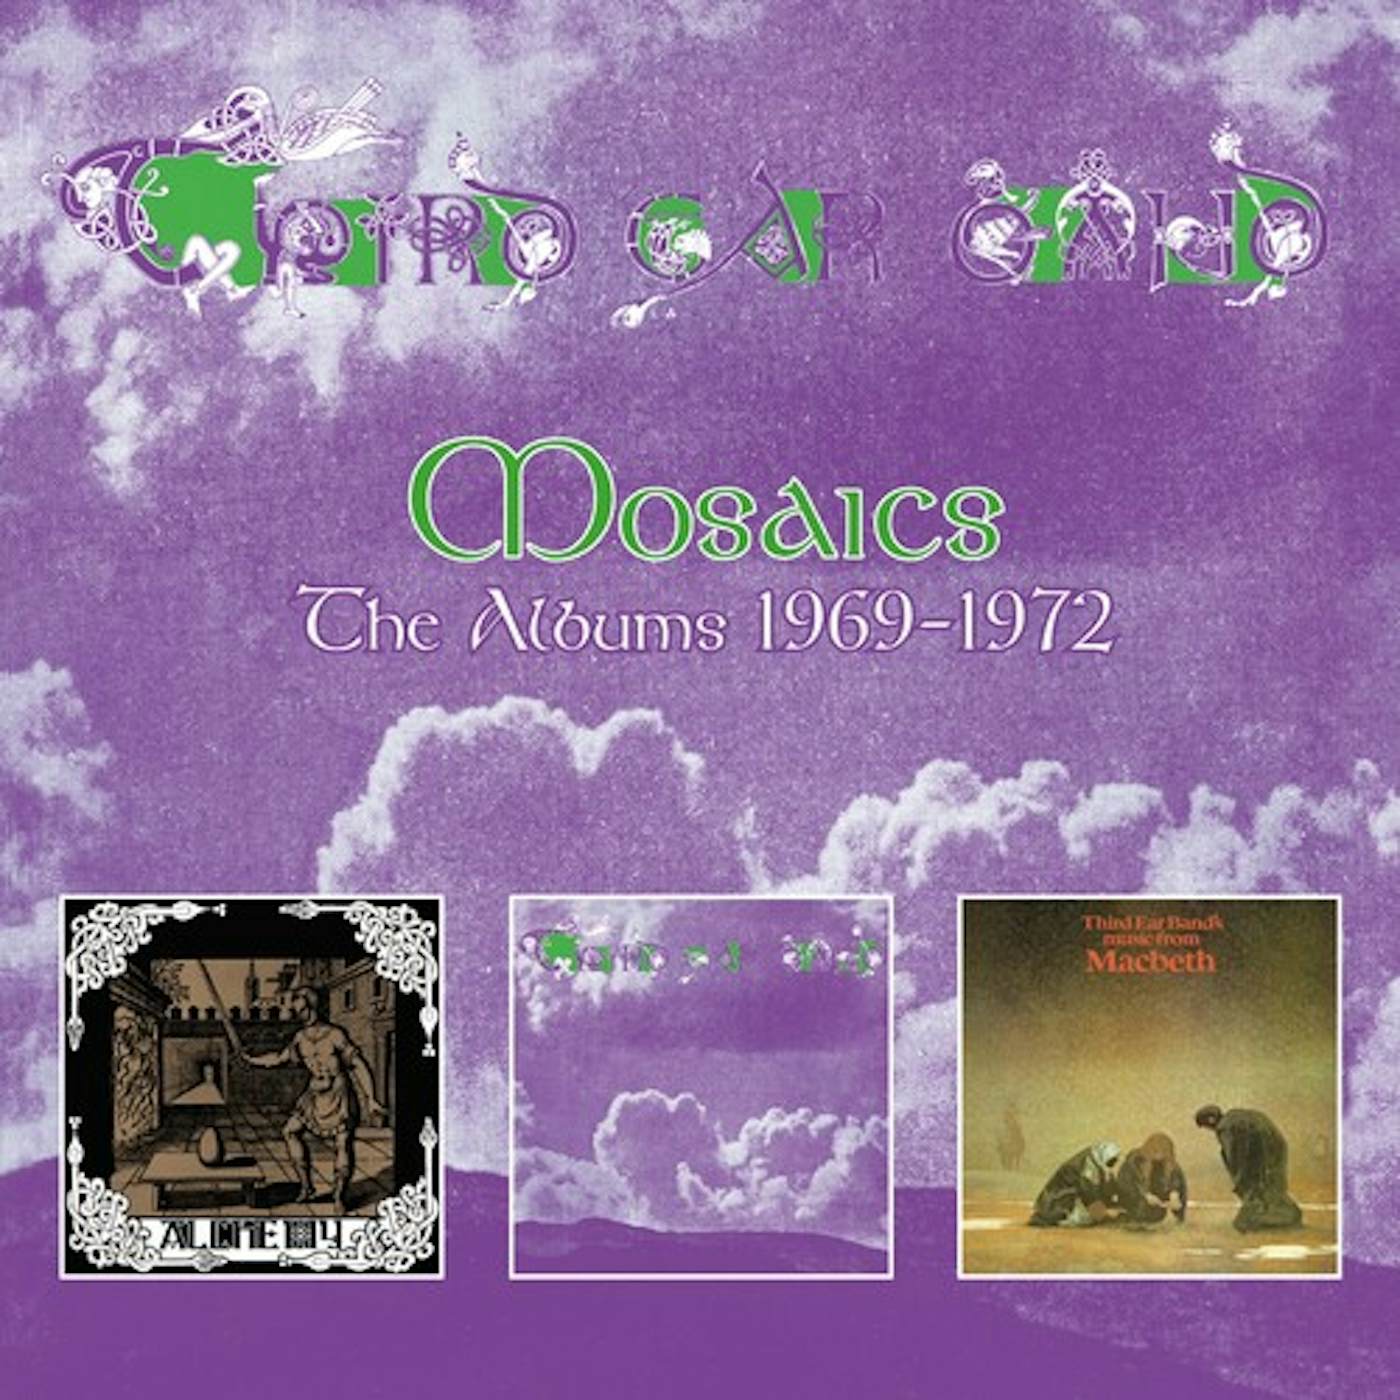 Third Ear Band MOSAICS: ALBUMS 1969-1972 CD